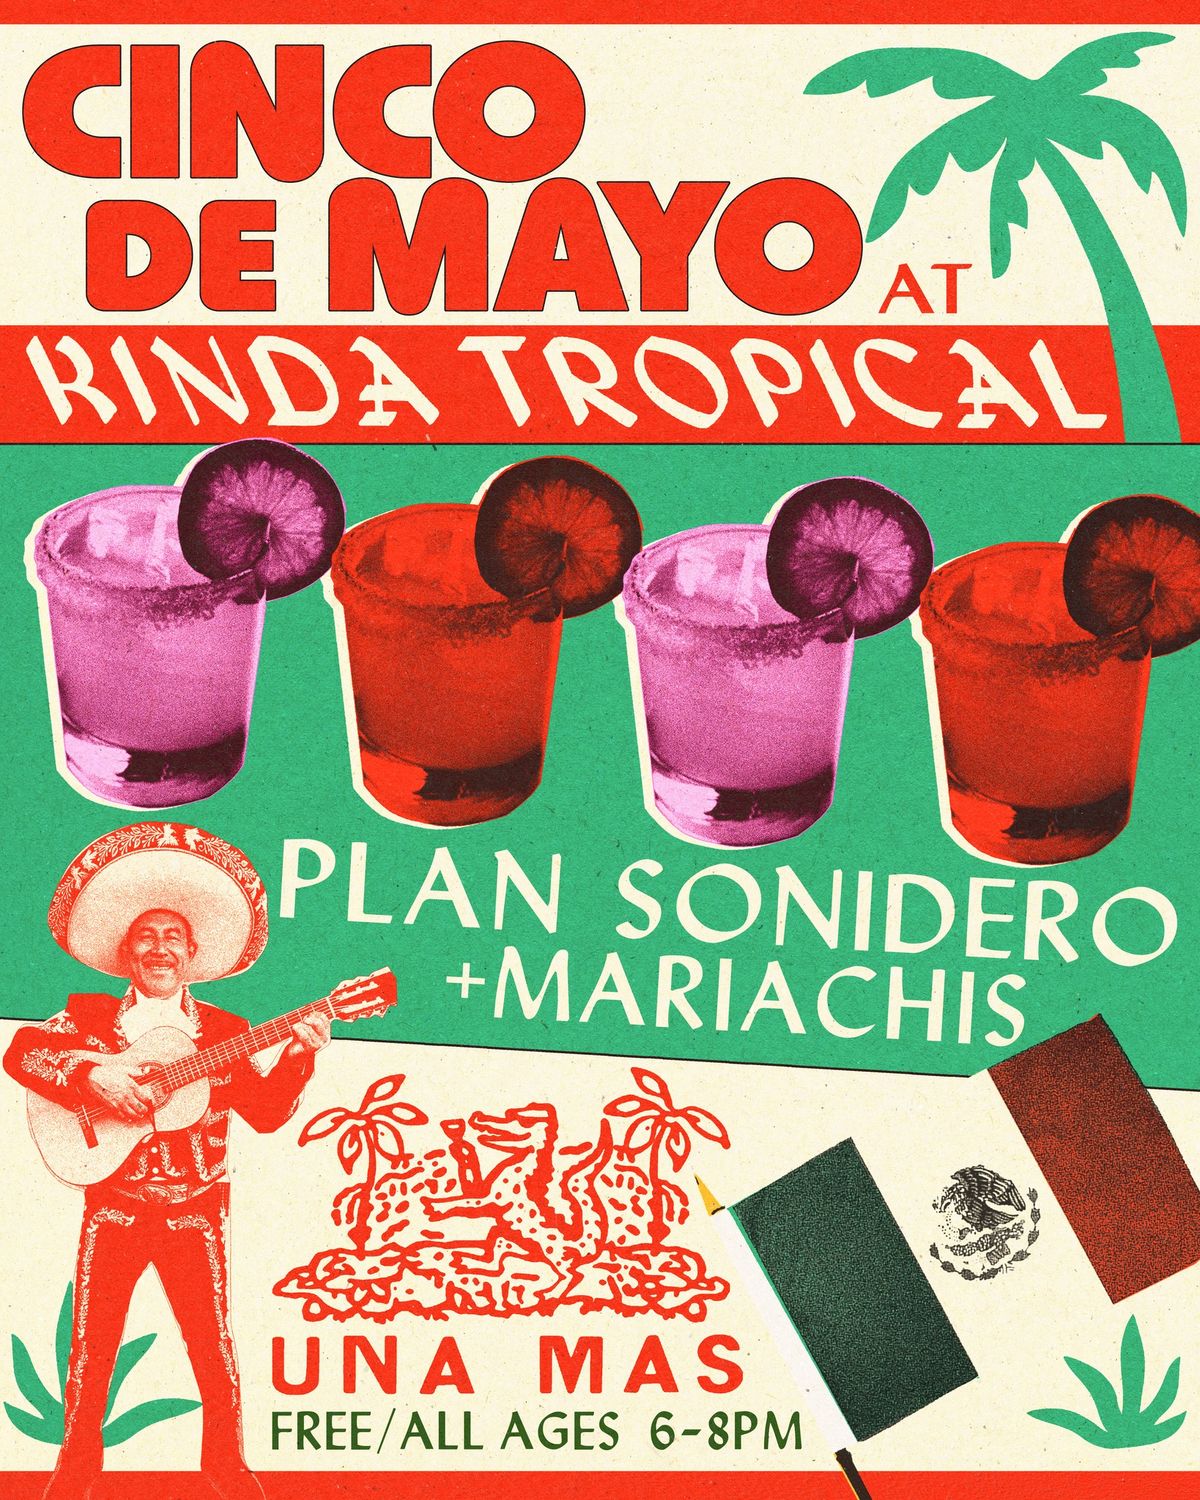 Cinco de Mayo at Kinda Tropical